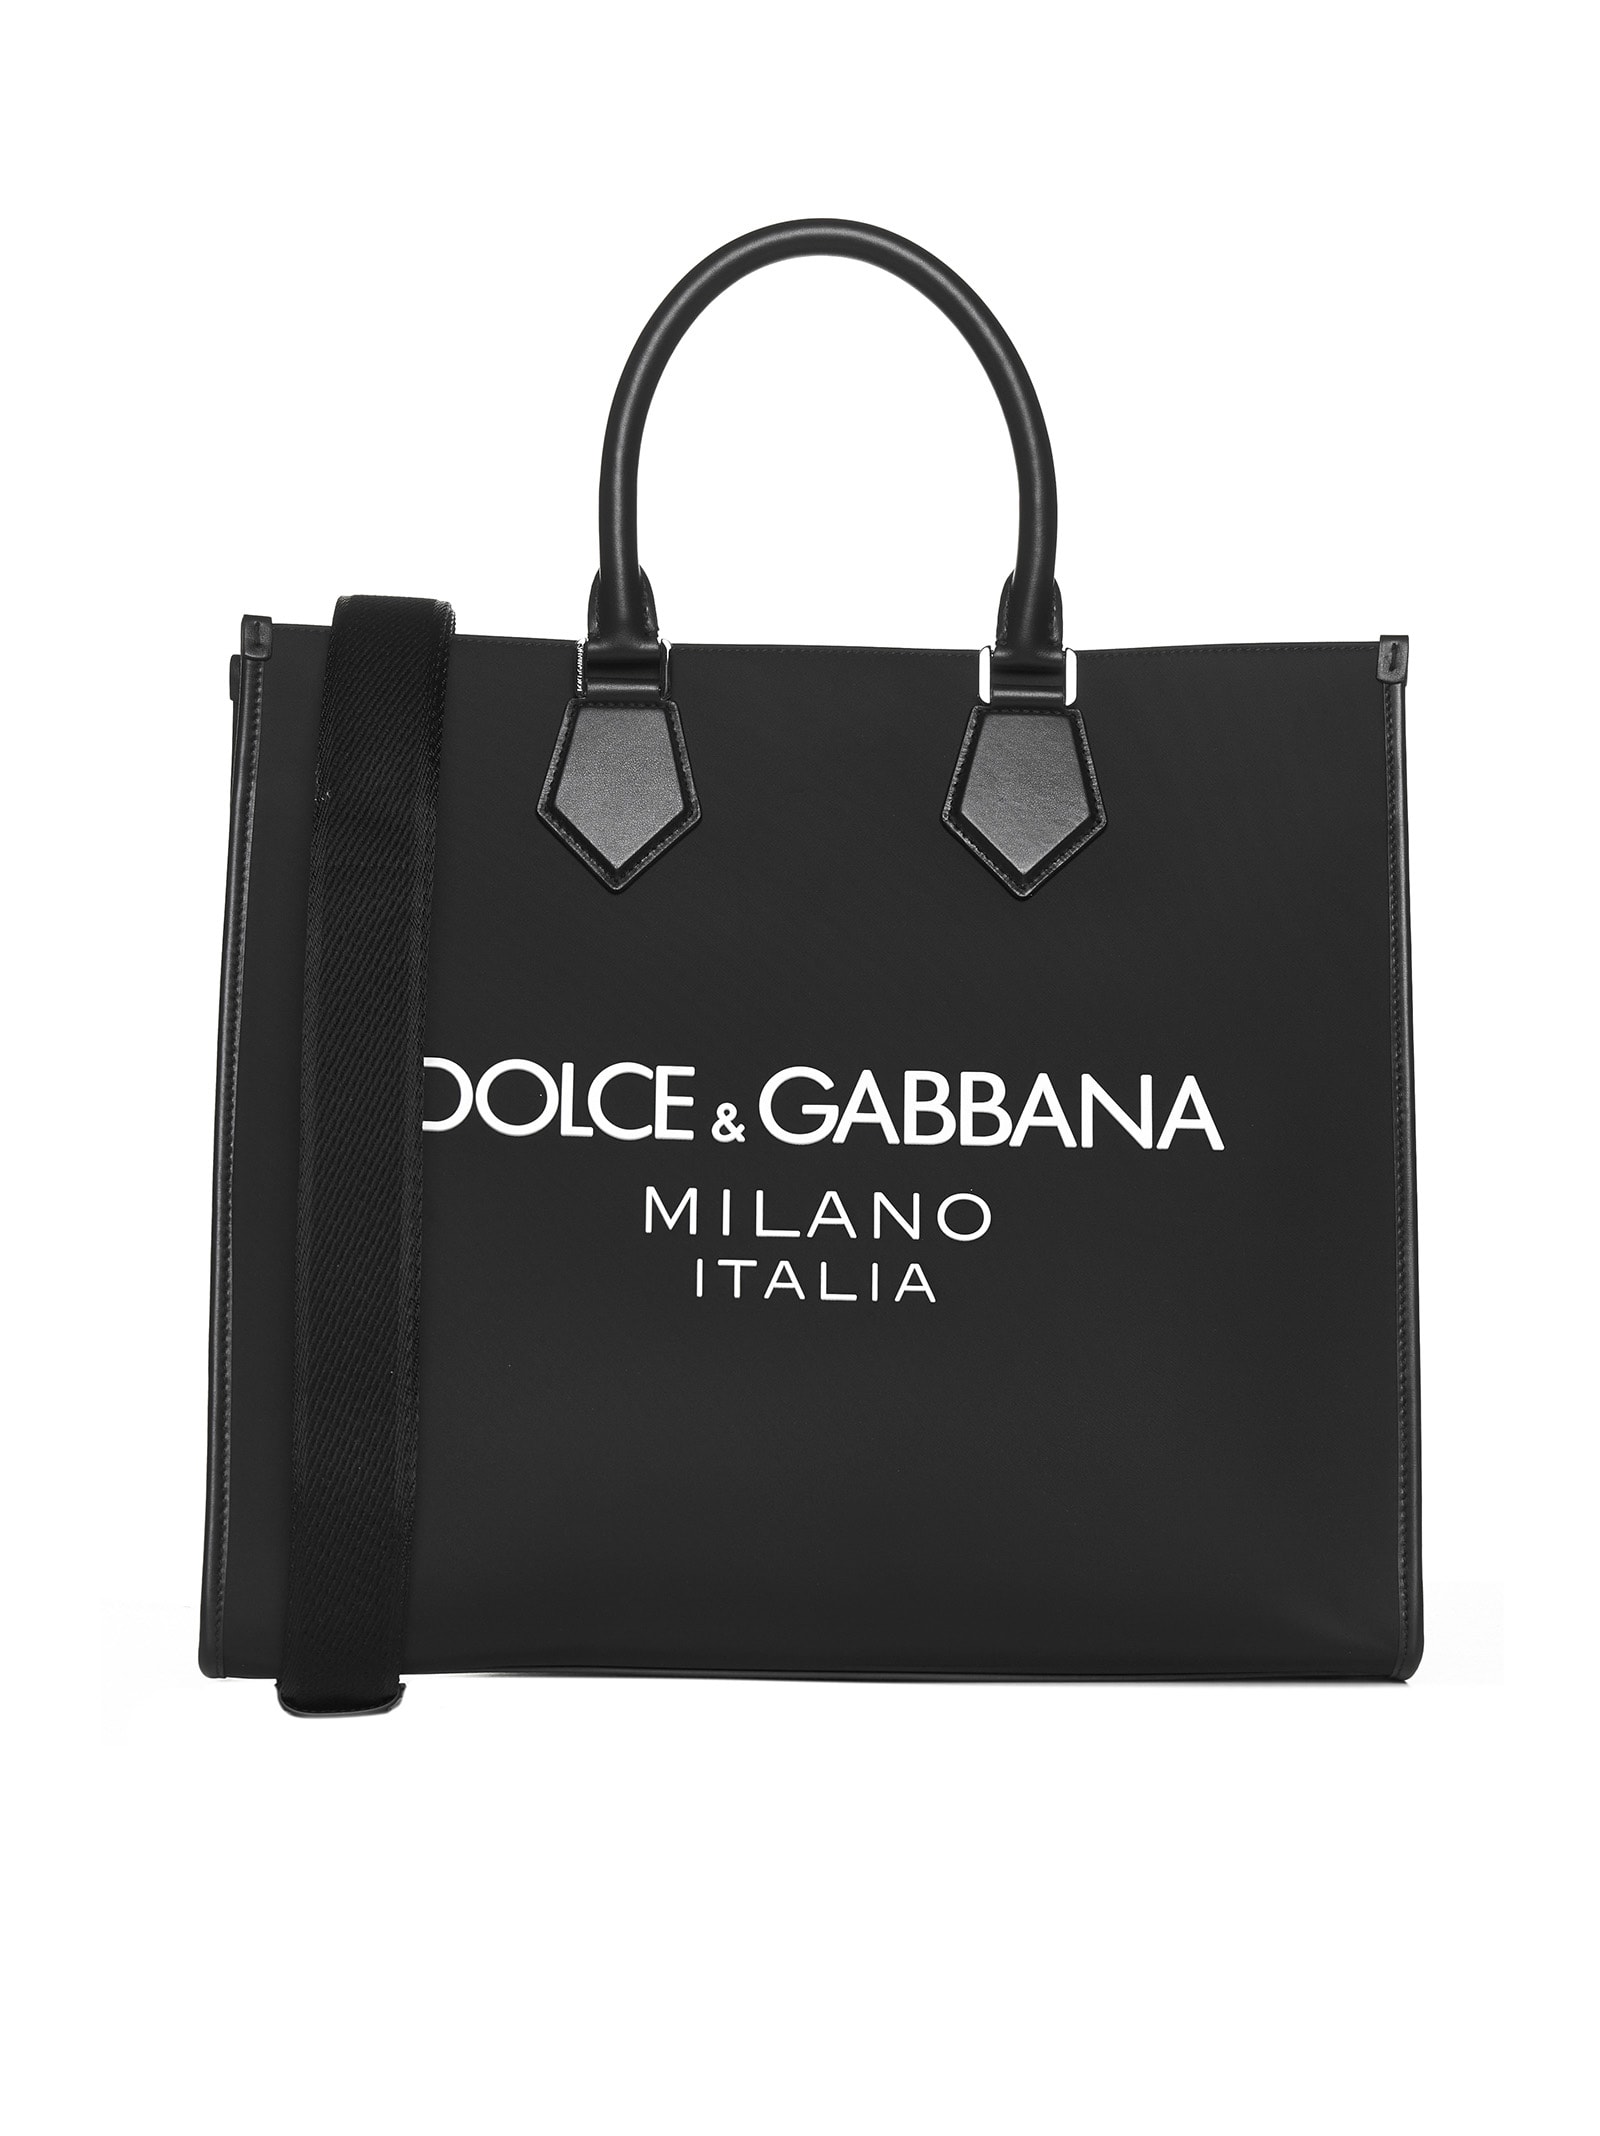 Dolce & Gabbana Tote In Black